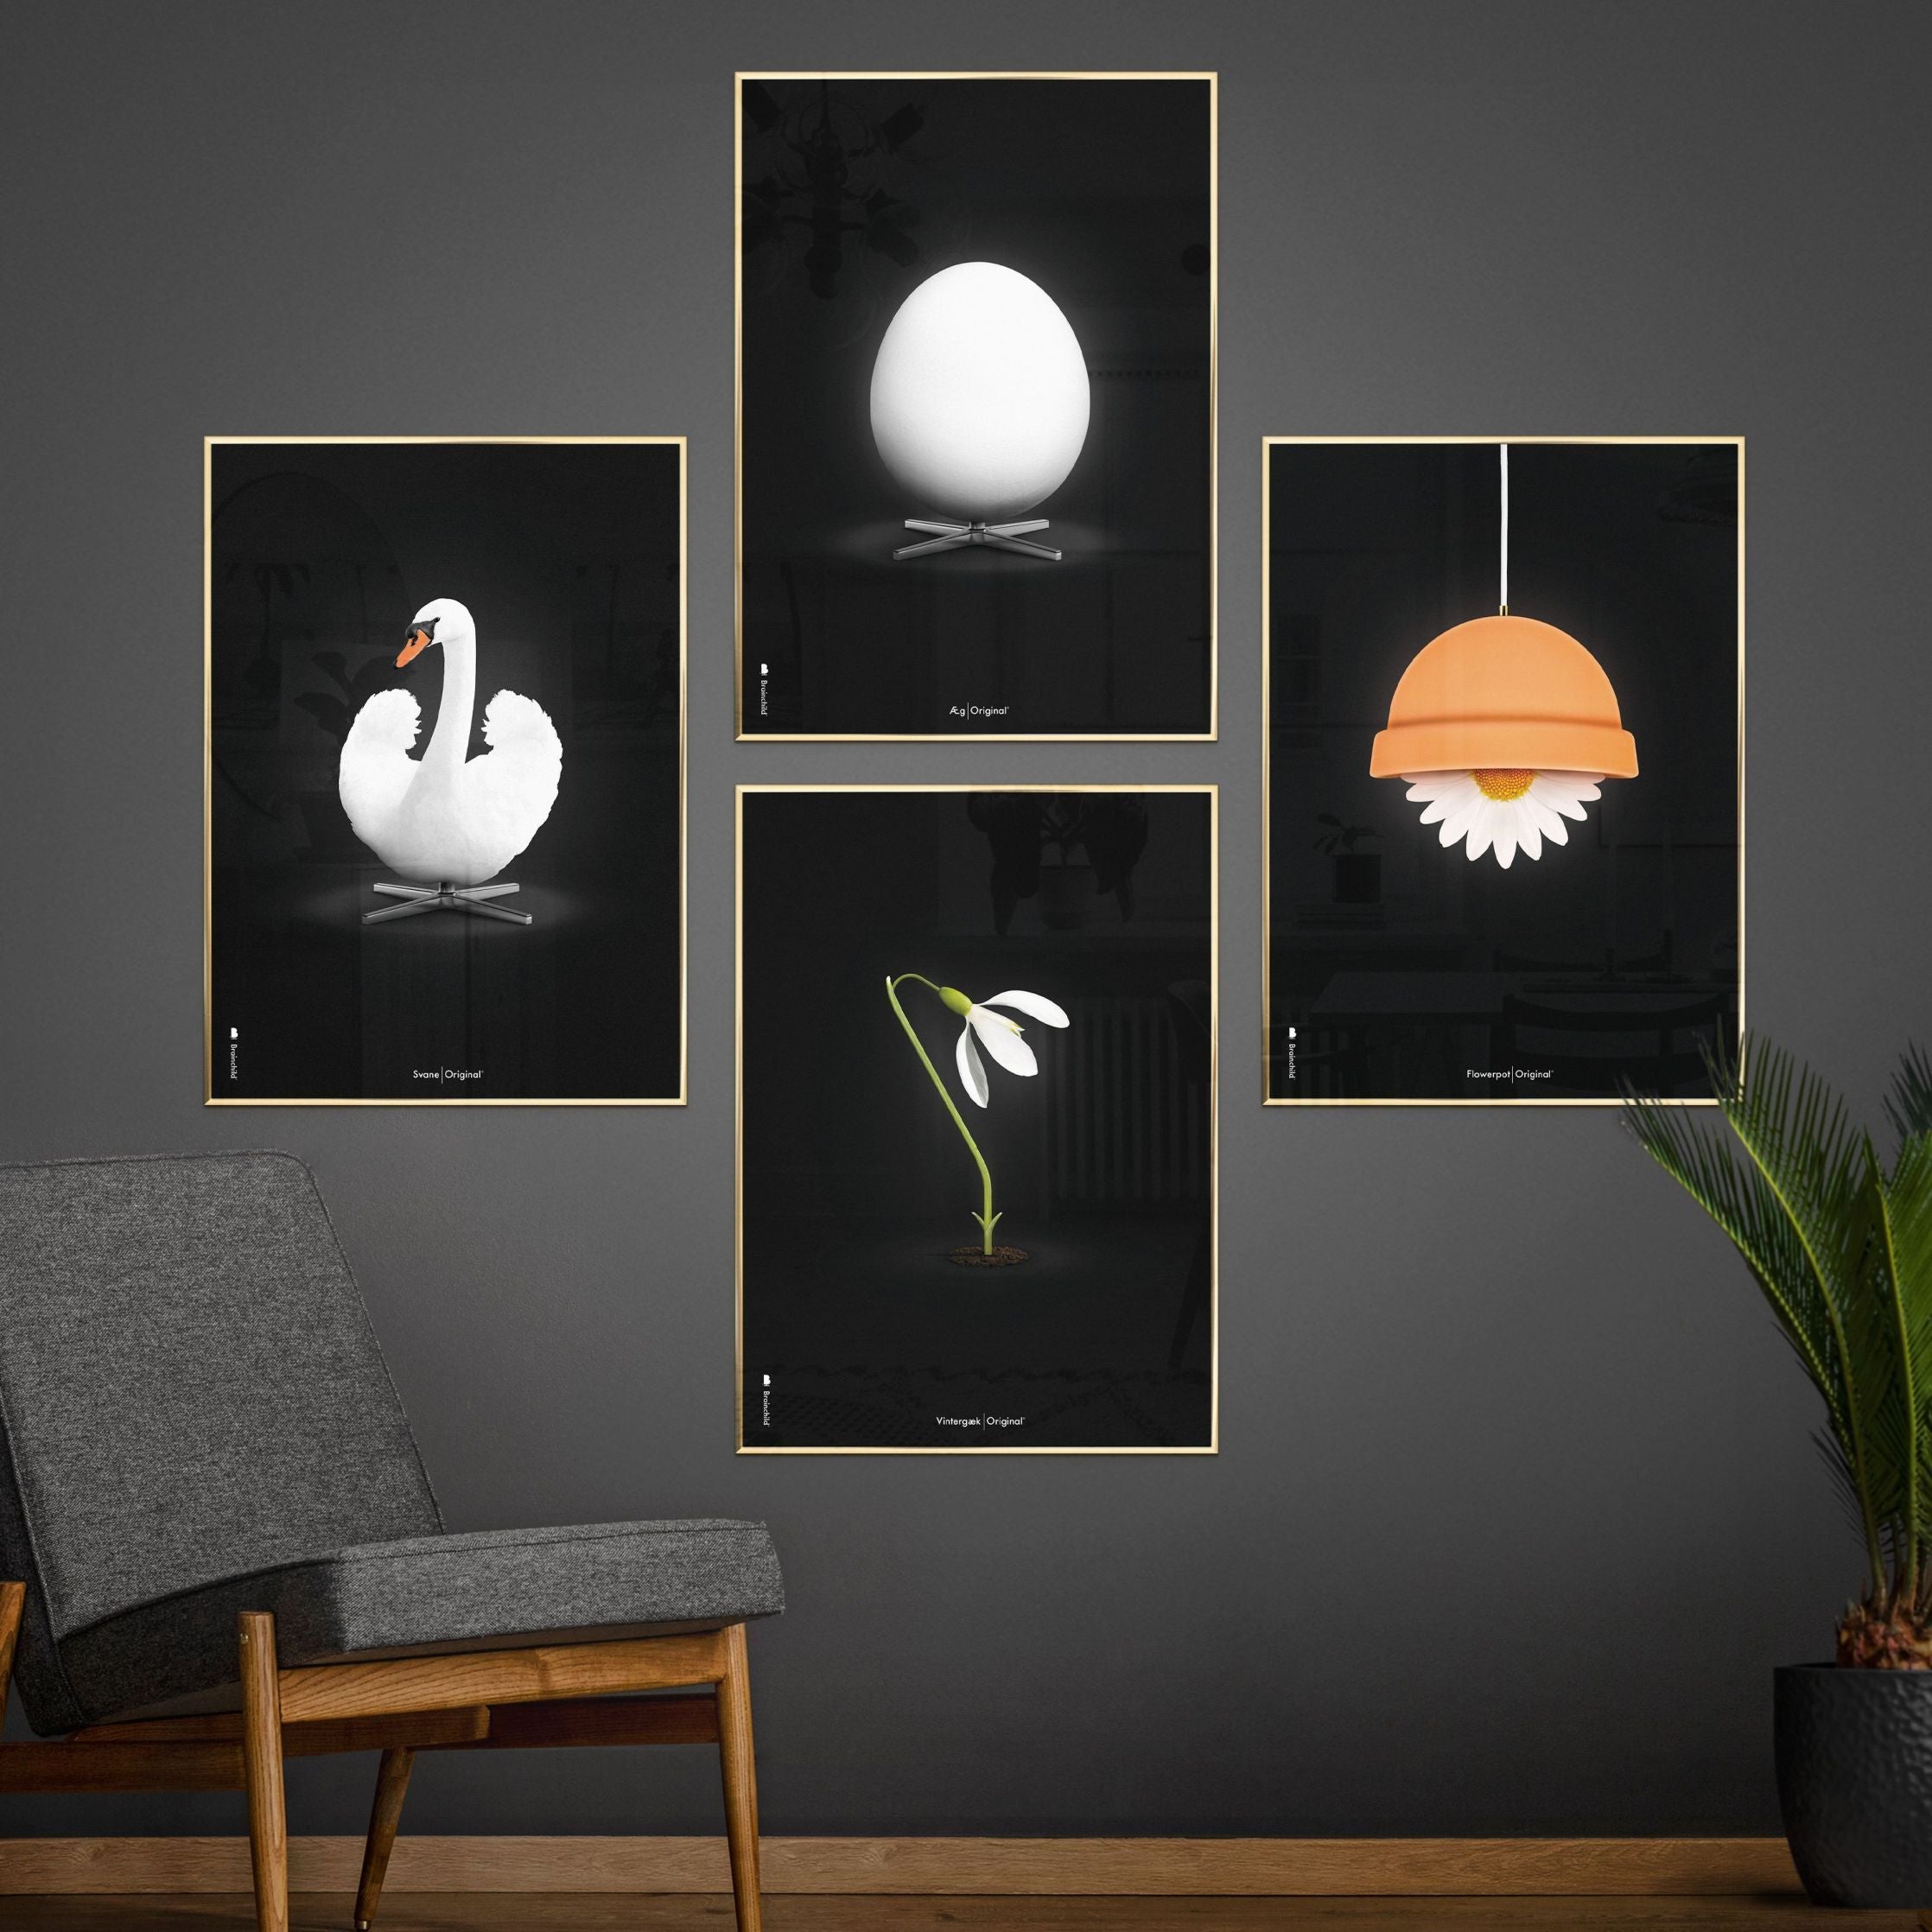 Klasický plakát Brainchild Flowerpot, rám vyrobený z lehkého dřeva 70x100 cm, černé pozadí